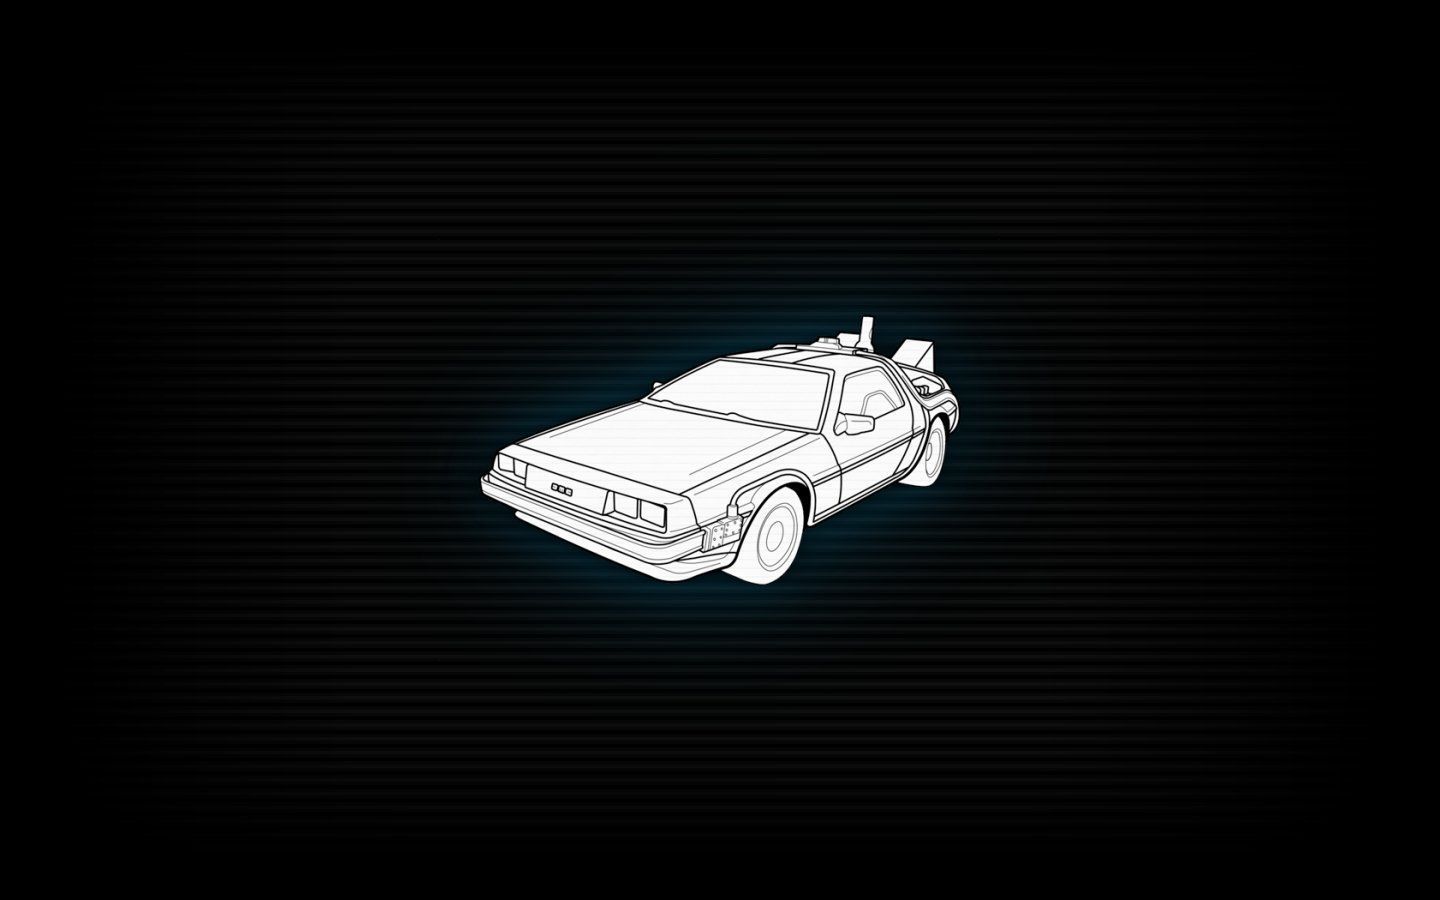 Back to the Future DeLorean DMC 12 wallpaper 1440x900 259045